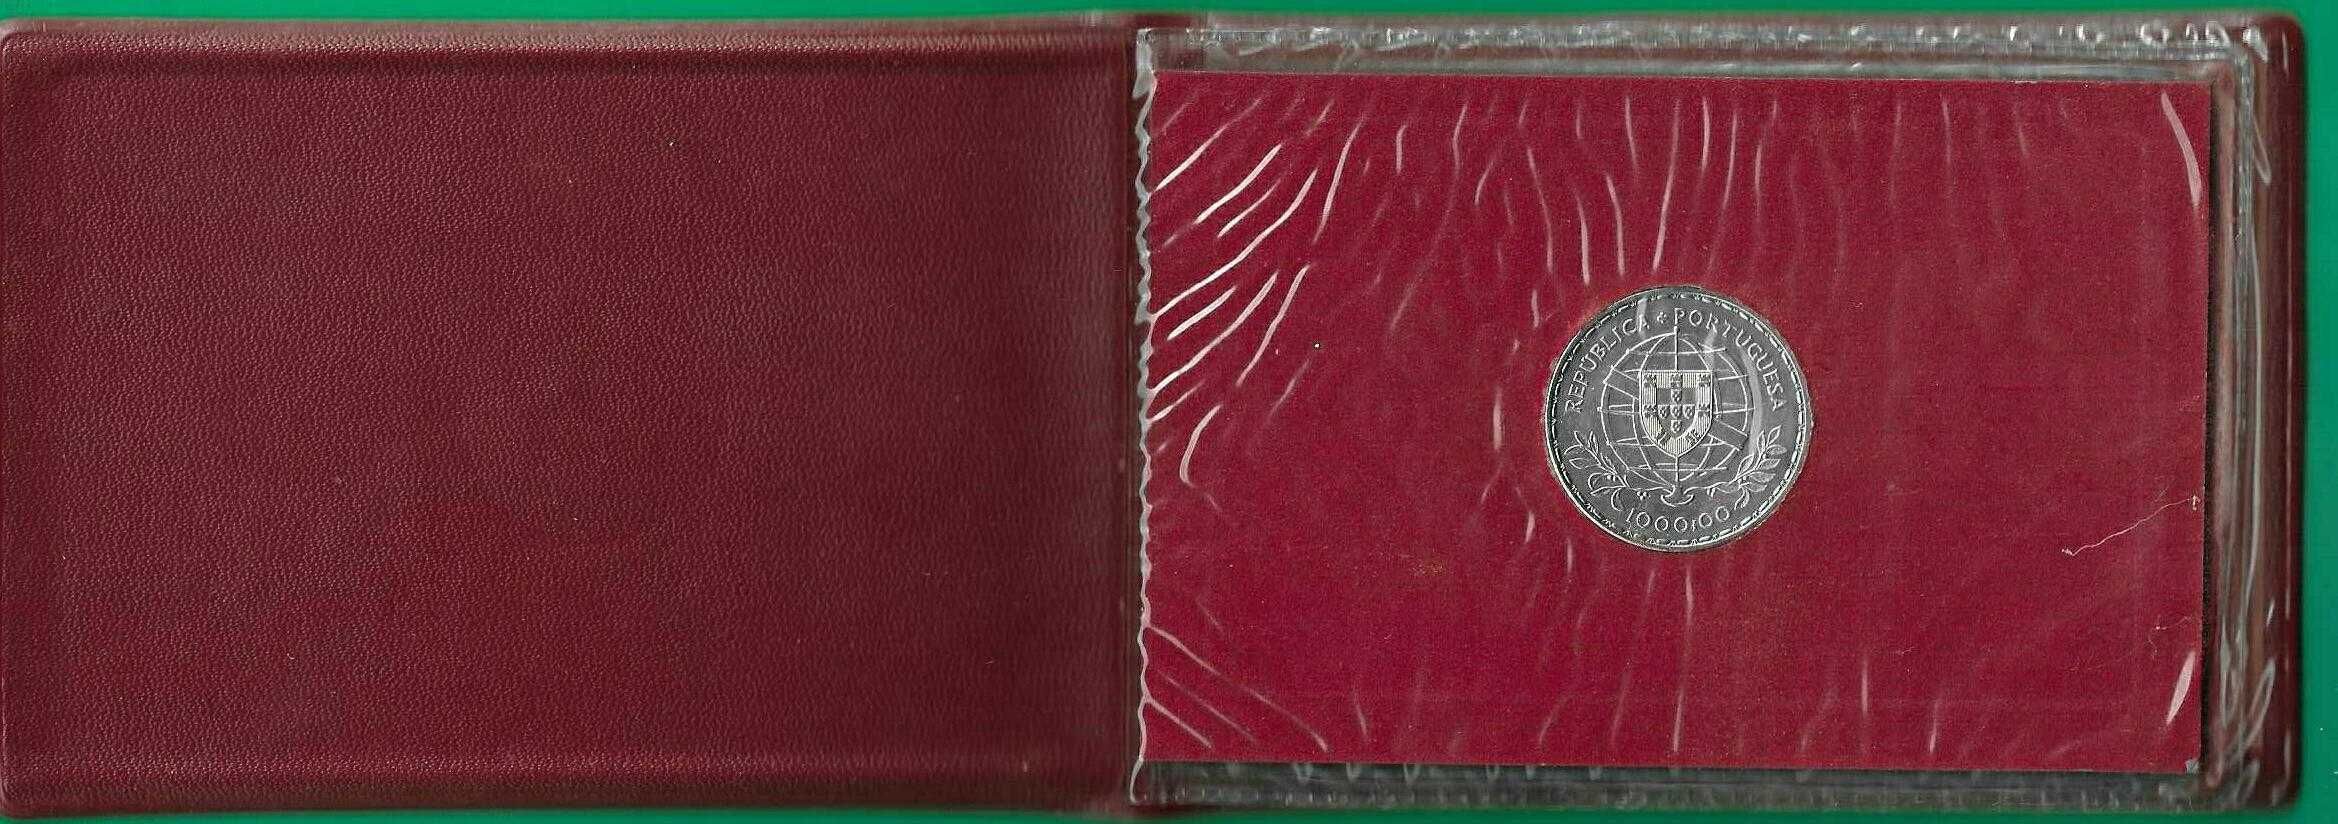 Carteira  moeda de 1000$ de 1980 Luis de Camões prata BNC